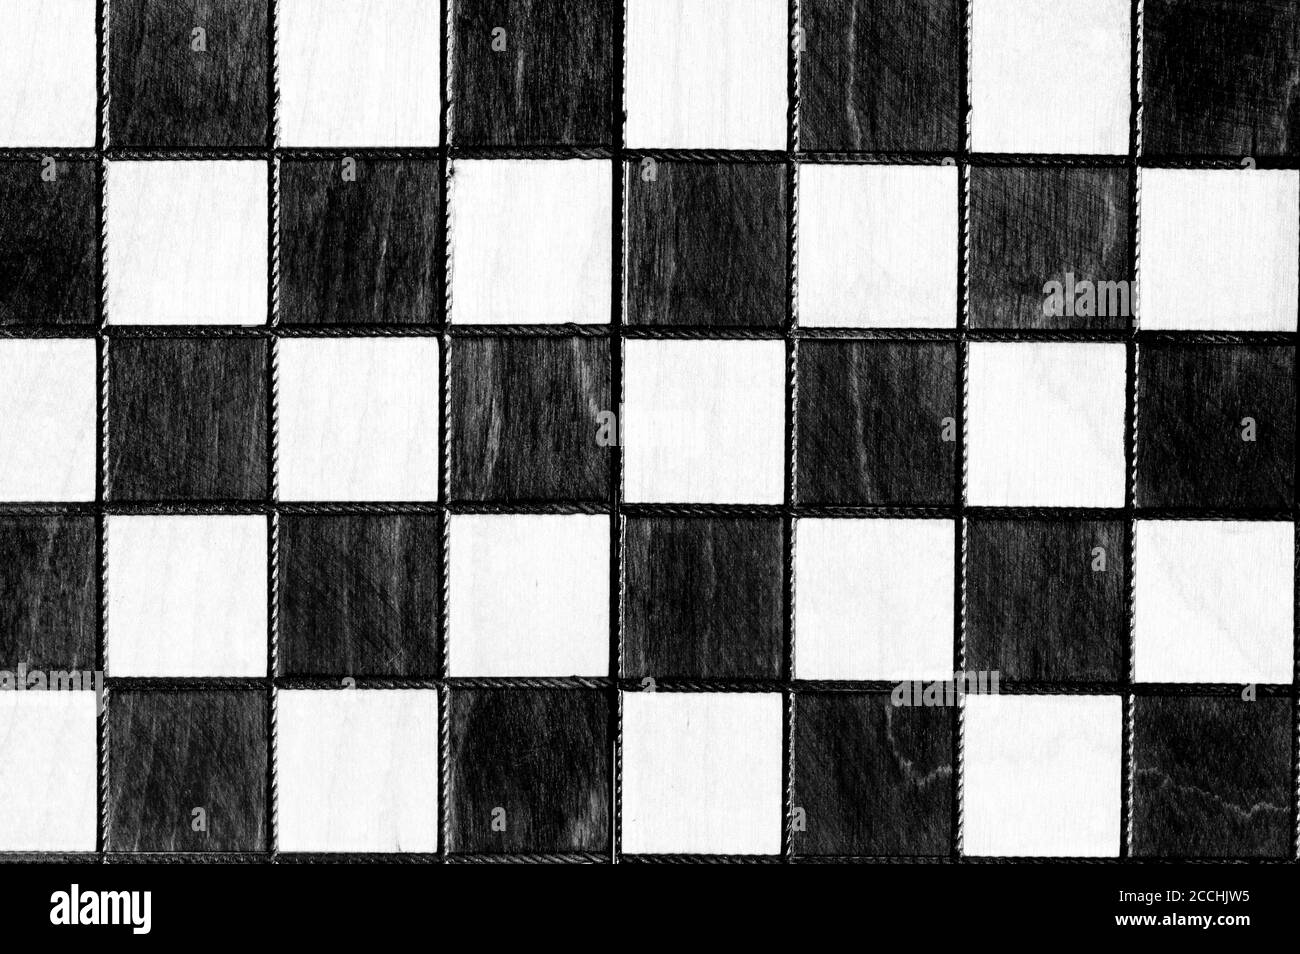 Image en noir et blanc d'arrière-plan de jeu d'échecs en bois vintage Banque D'Images